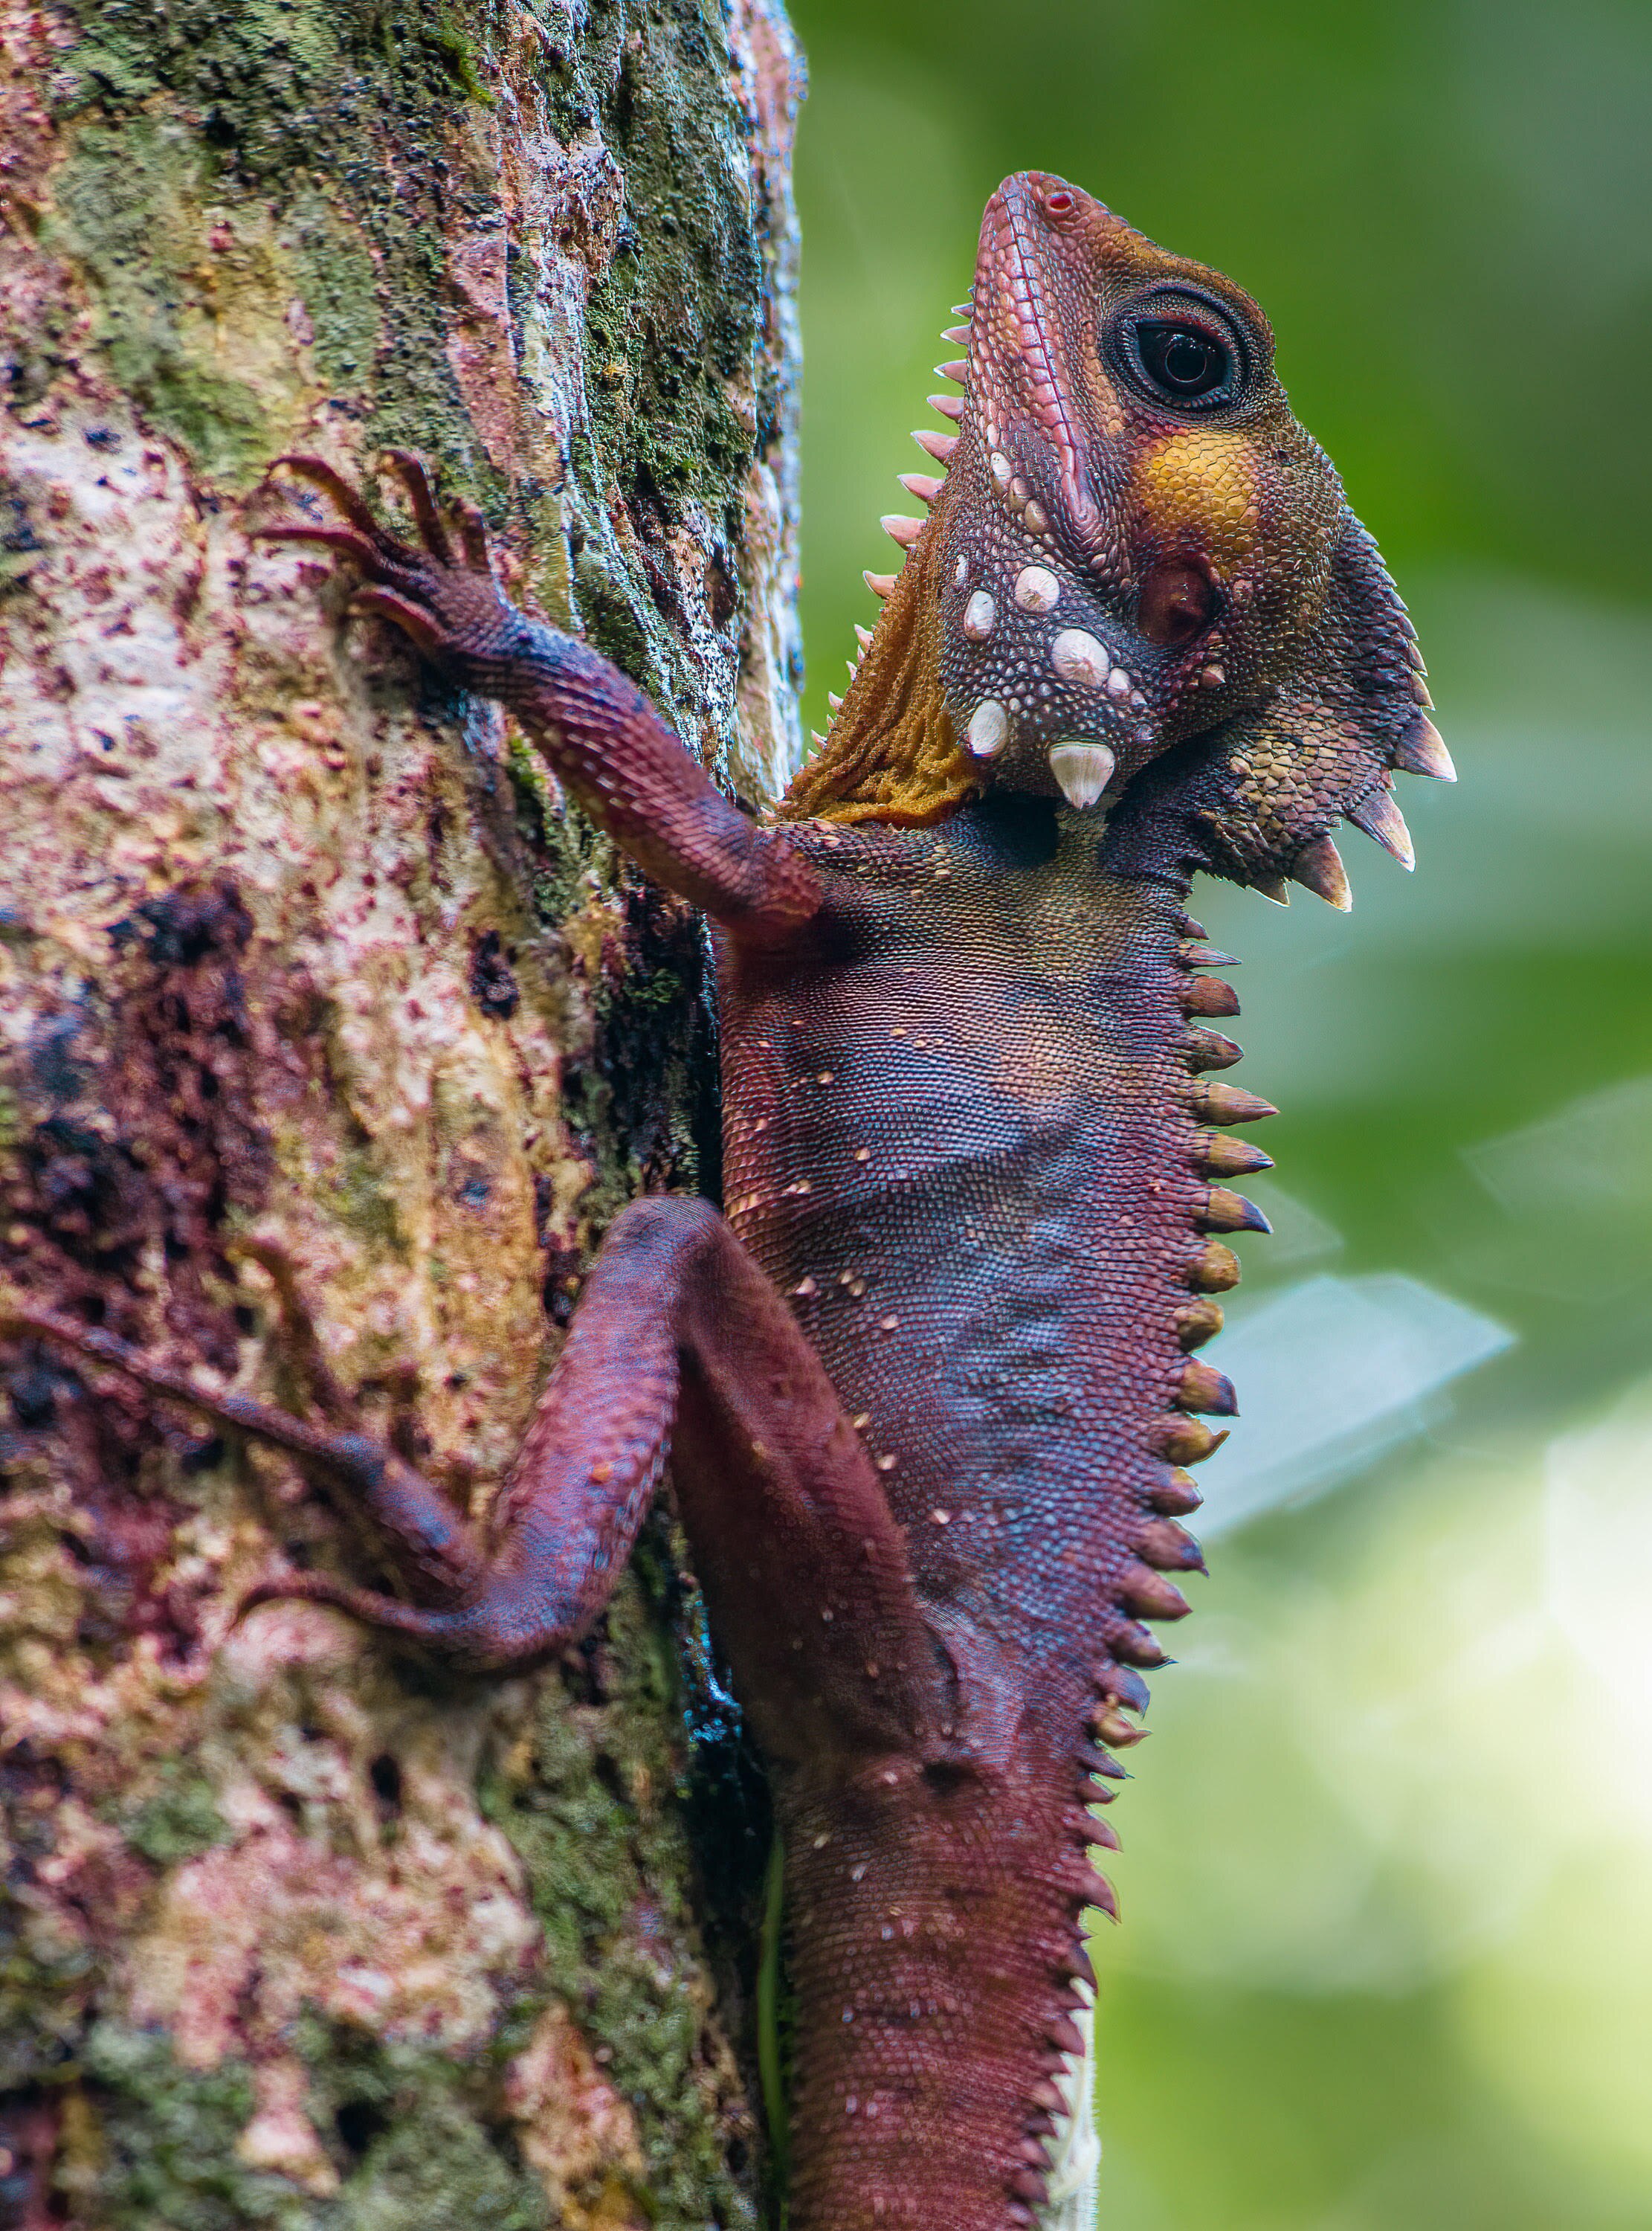 A lizard on a tree.